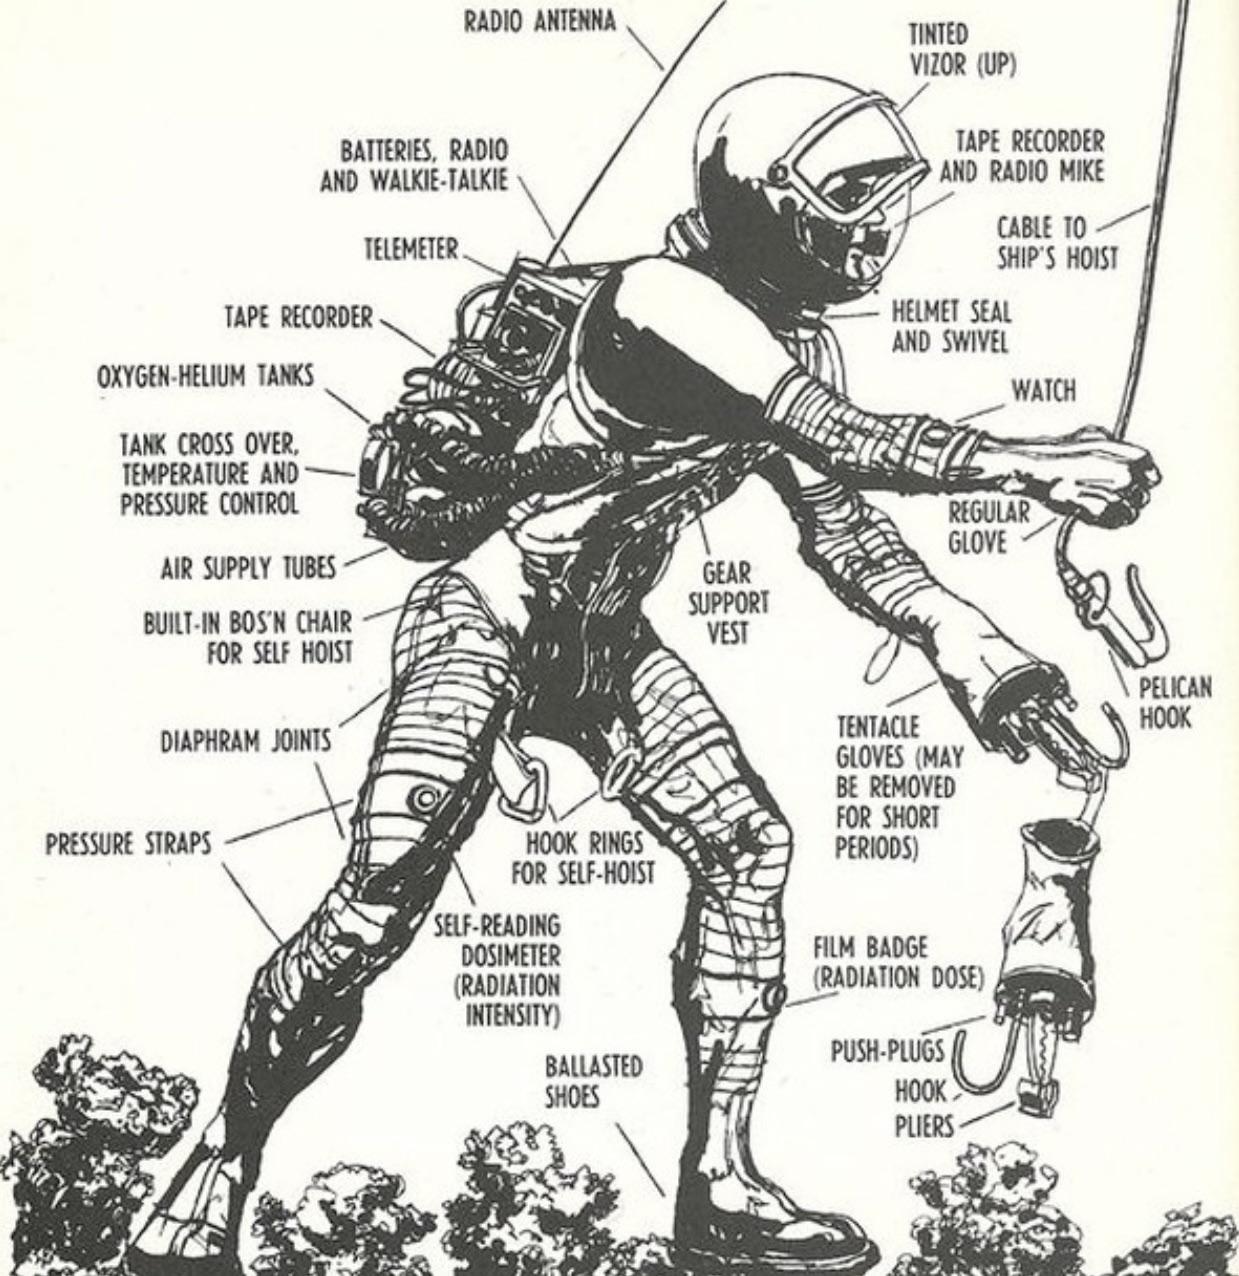 1960s spacesuit designs from Werner von Braun’s science fiction novel.jpg